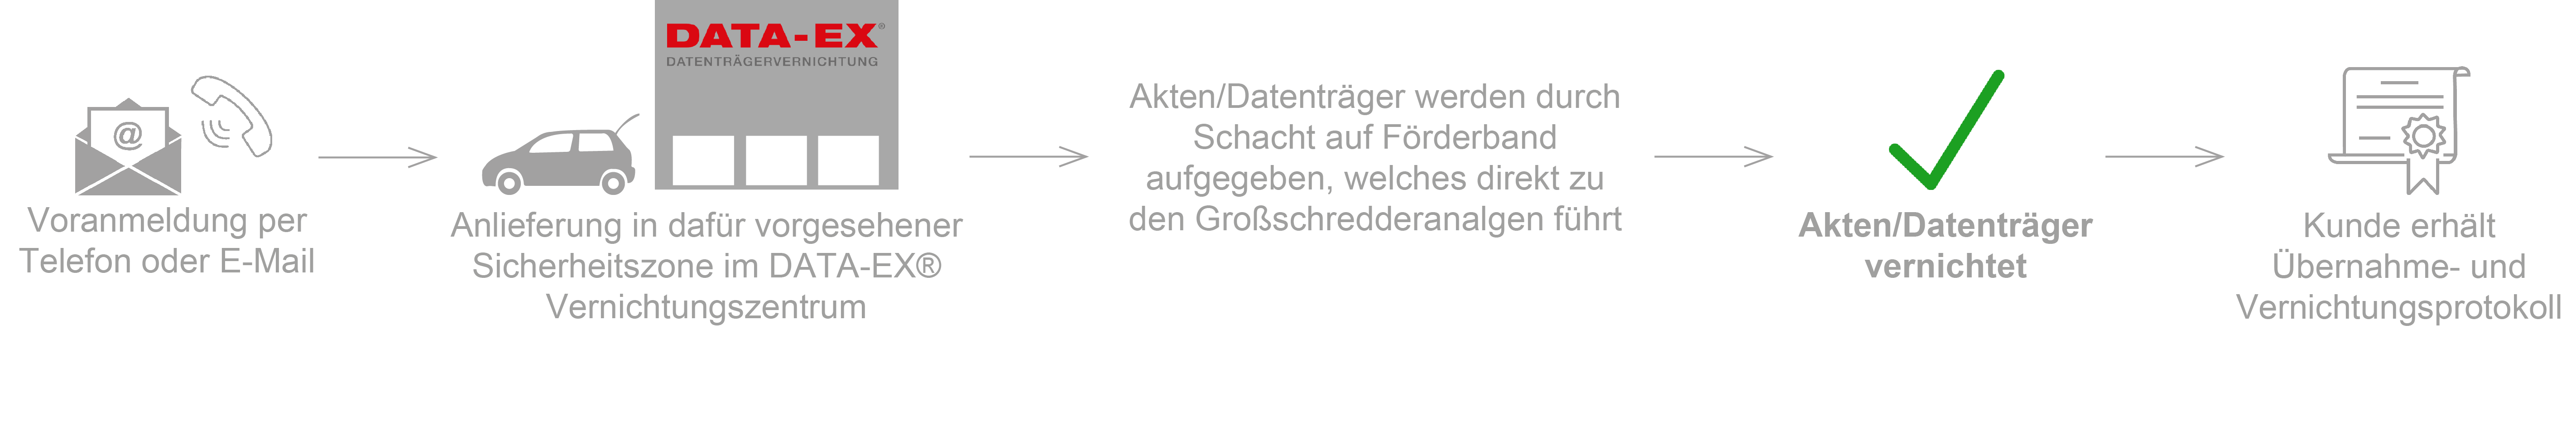 DATA-EX_Darstellung_und_ablauf_Selbstanlieferung